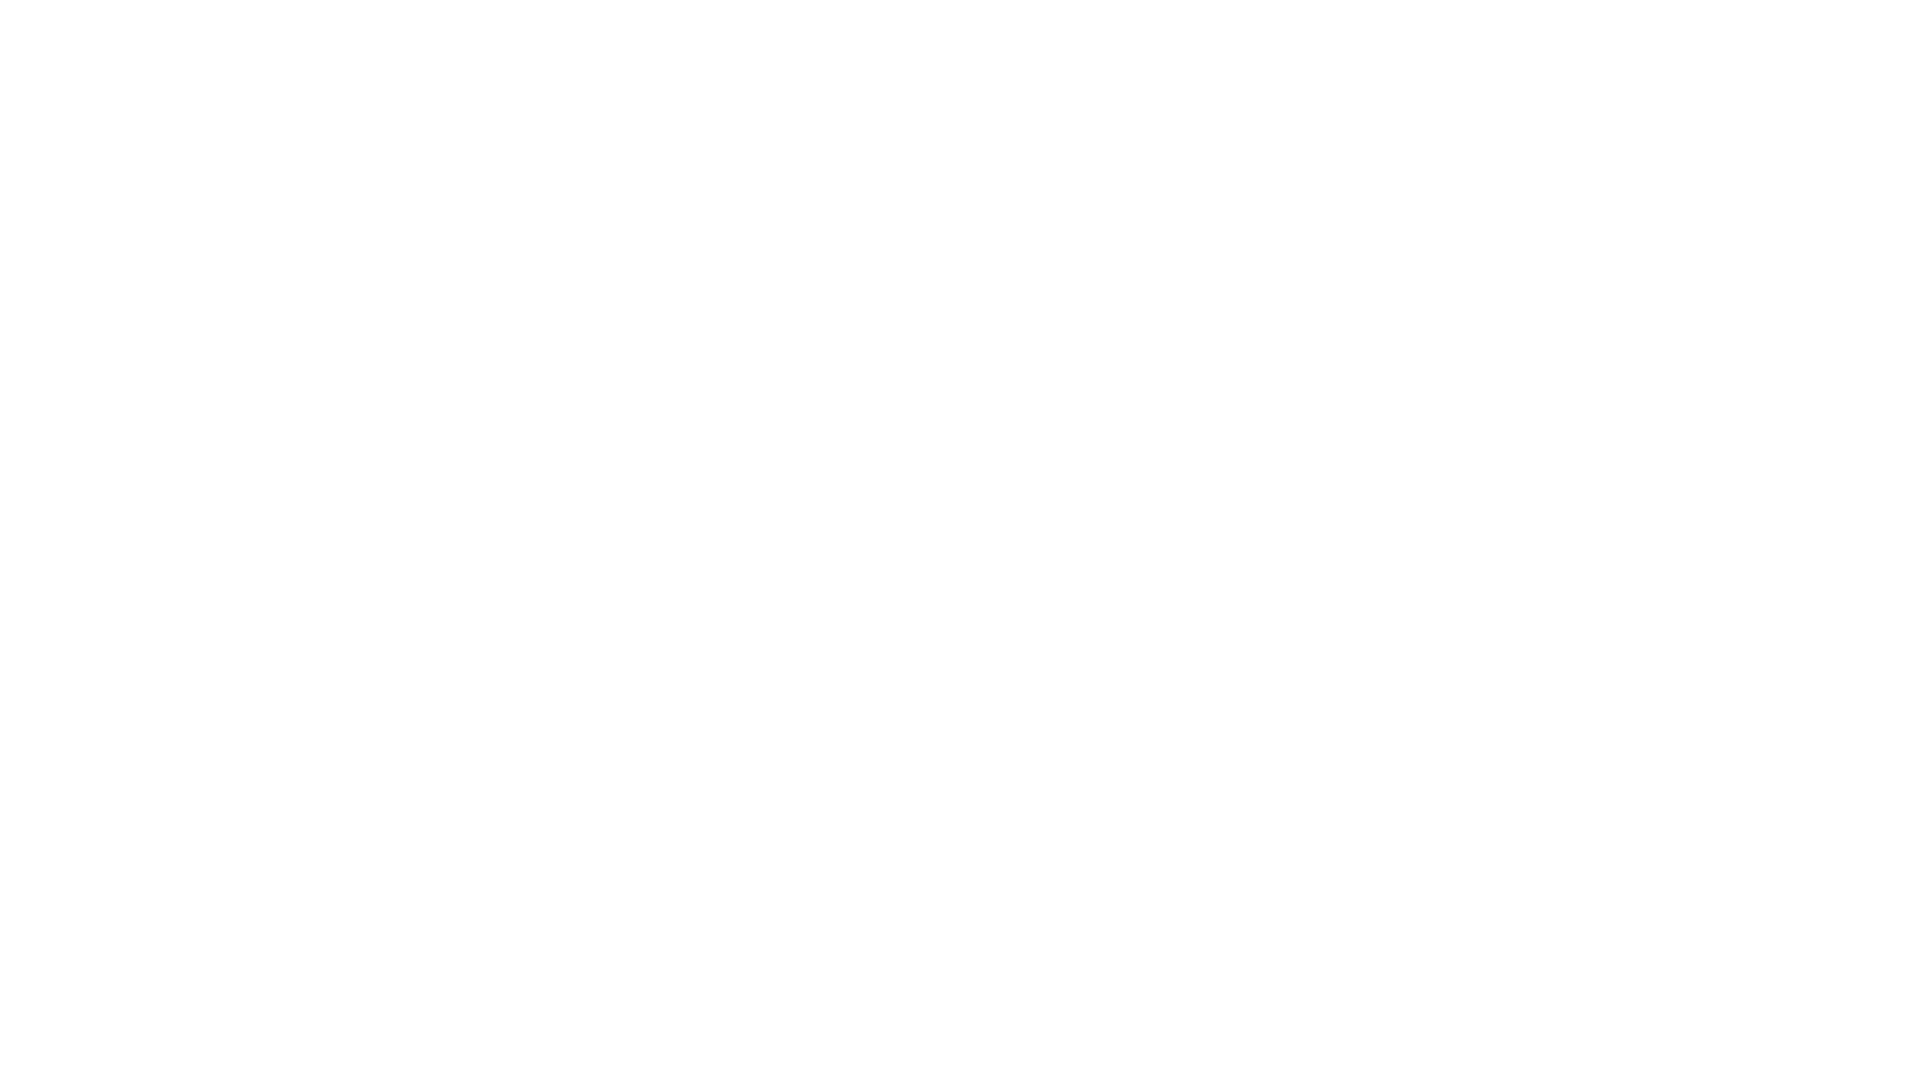 Maserati.png